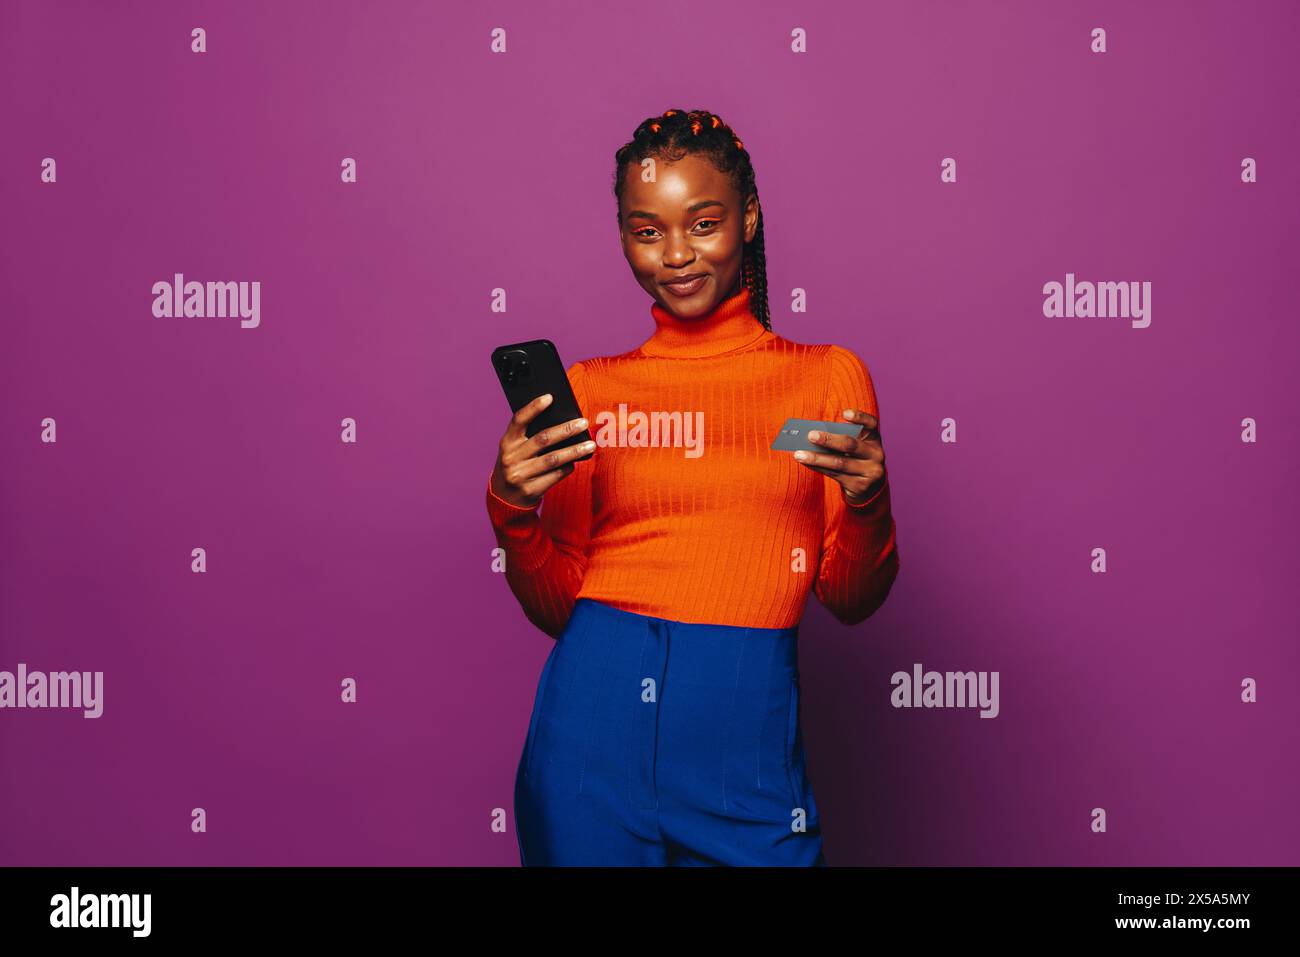 Eine junge Frau mit zweifarbigen Zöpfen steht vor einem violetten Hintergrund und nutzt ein Smartphone, um eine Online-Zahlung über eine Shopping-App zu tätigen. Stockfoto